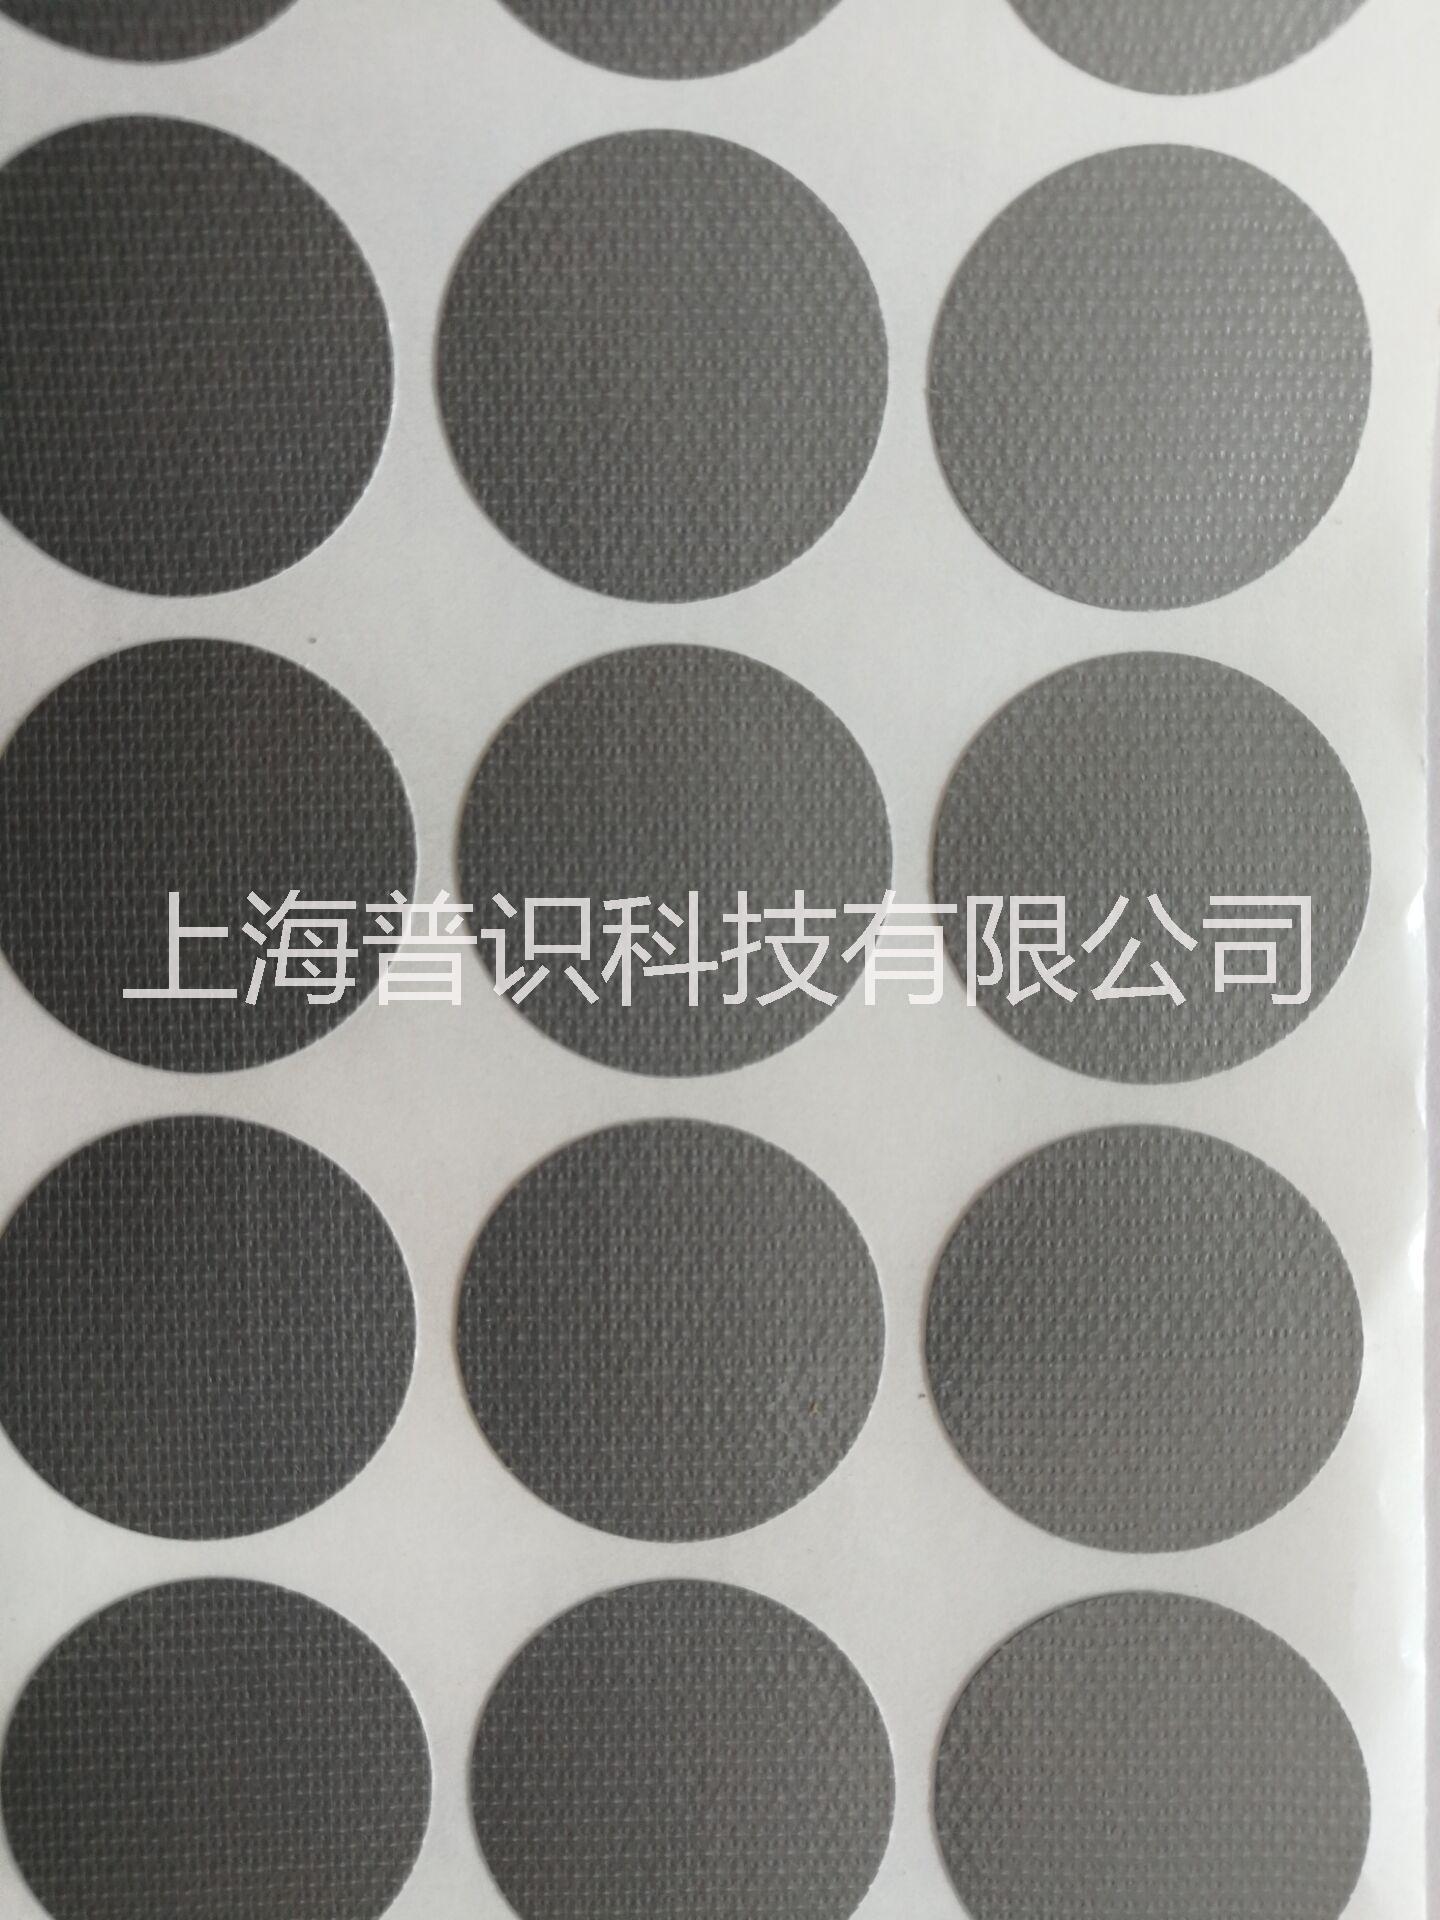 上海市布基标签炭纤维圆点标签 塑基圆标厂家布基标签炭纤维圆点标签 塑基圆标签24*24 灰色不干胶标签 可定做布基标签